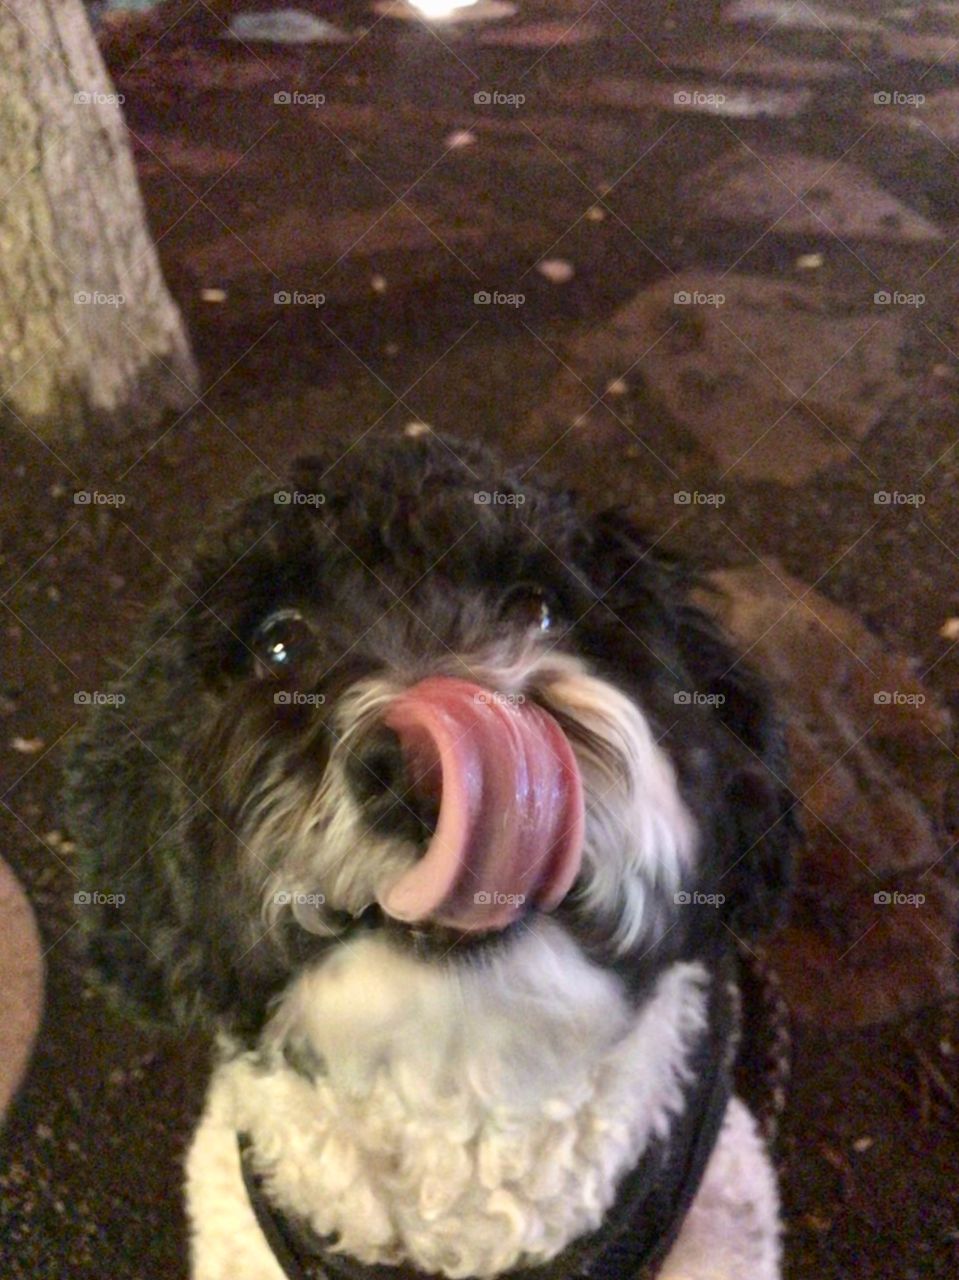 Tongue licking 